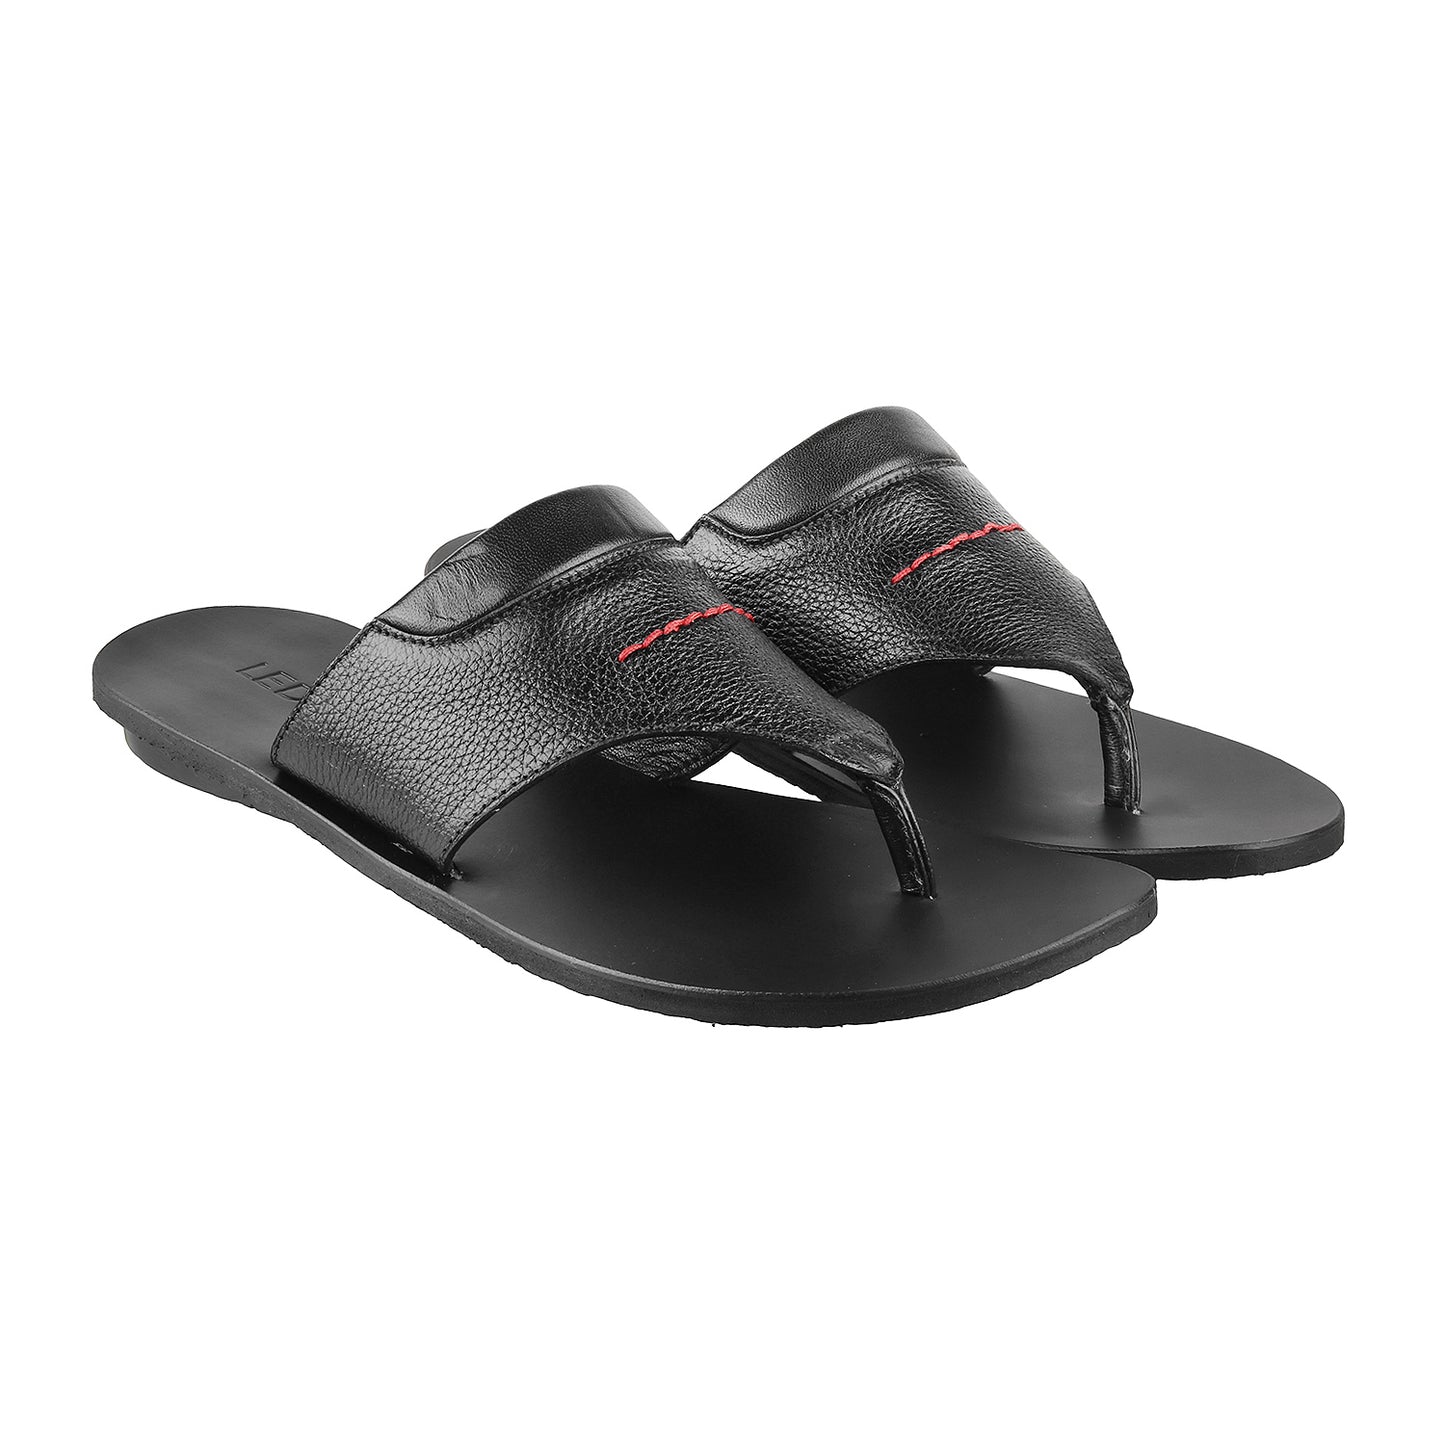 ledero article no 12-113 men black leather sandal flipflop with stitch detail PU sole - pair